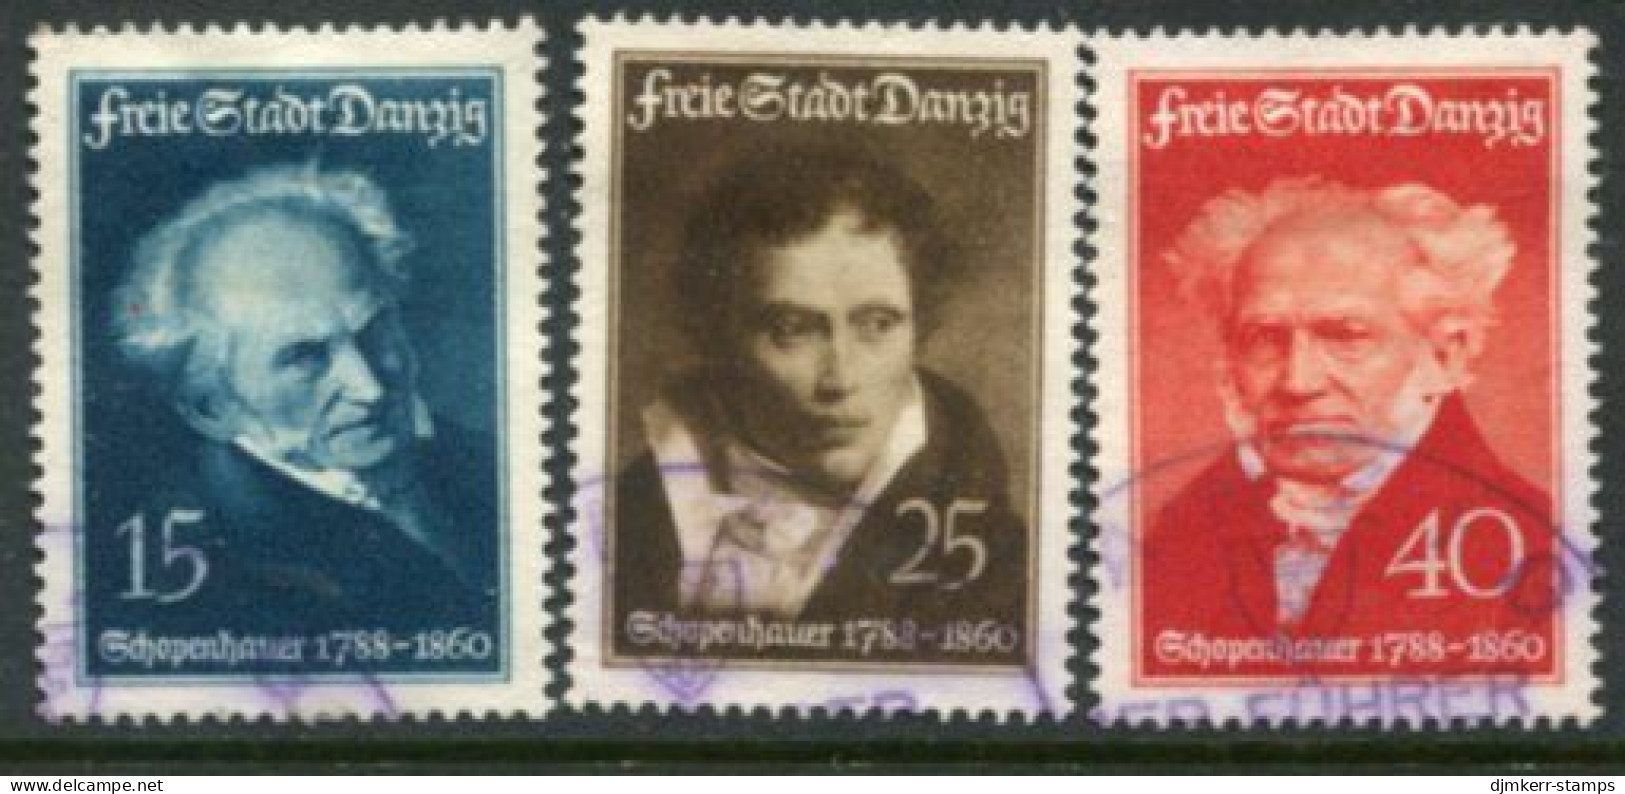 DANZIG 1938 Schopenhauer Birth Anniversary Used  Michel 281-83 - Gebraucht